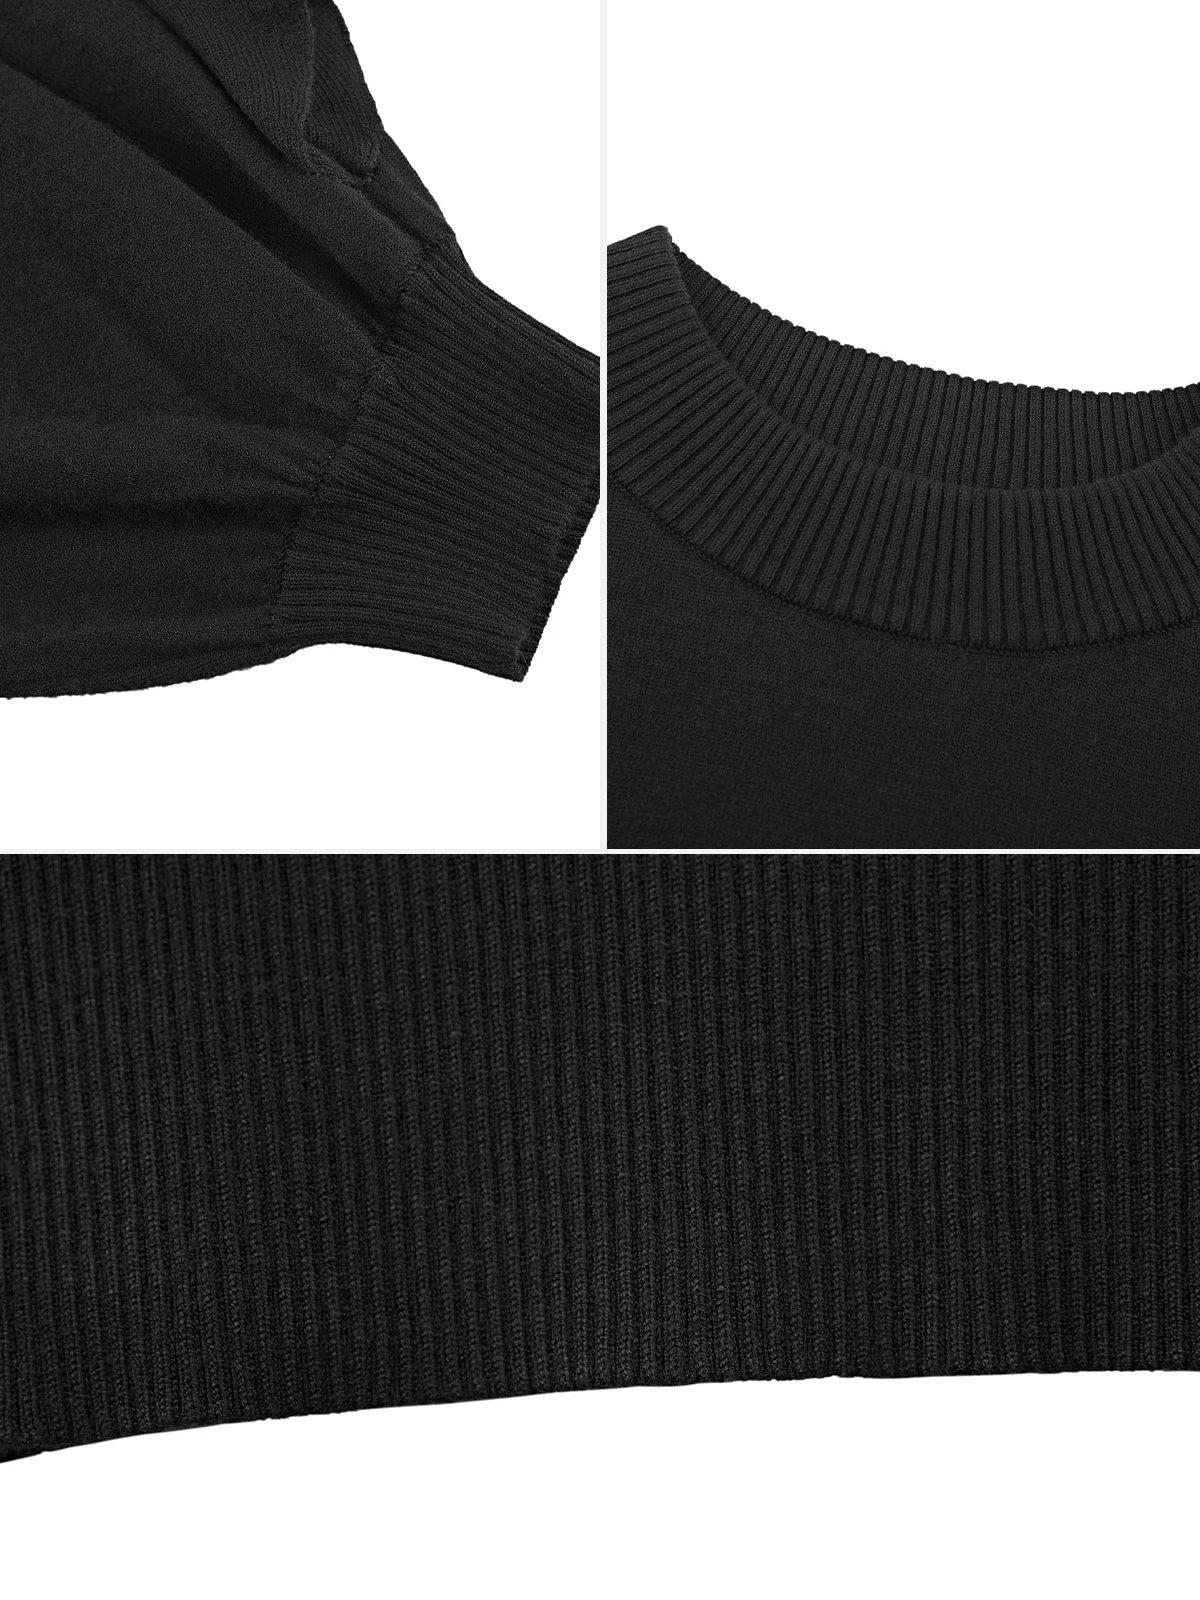 Round Neck Wavy Stitching Black Sweater